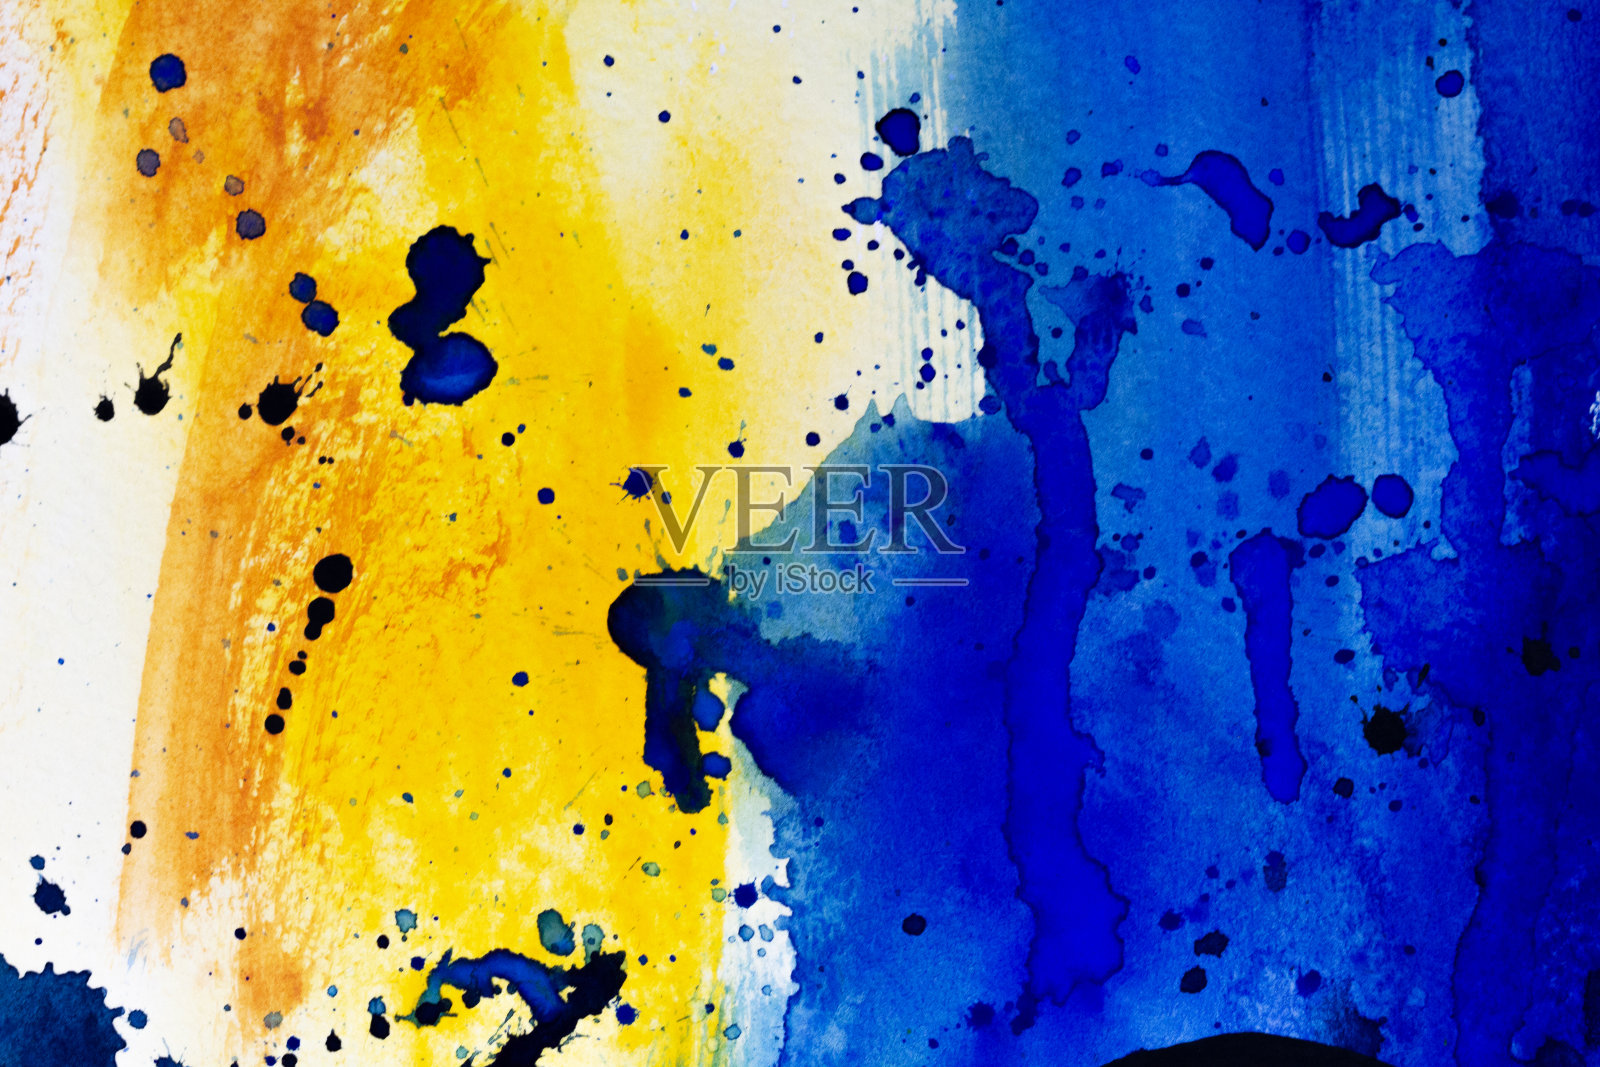 水彩彩色纹理背景。手绘水彩抽象画蓝黄色与黑色尖锐的笔触。水彩溅照片摄影图片